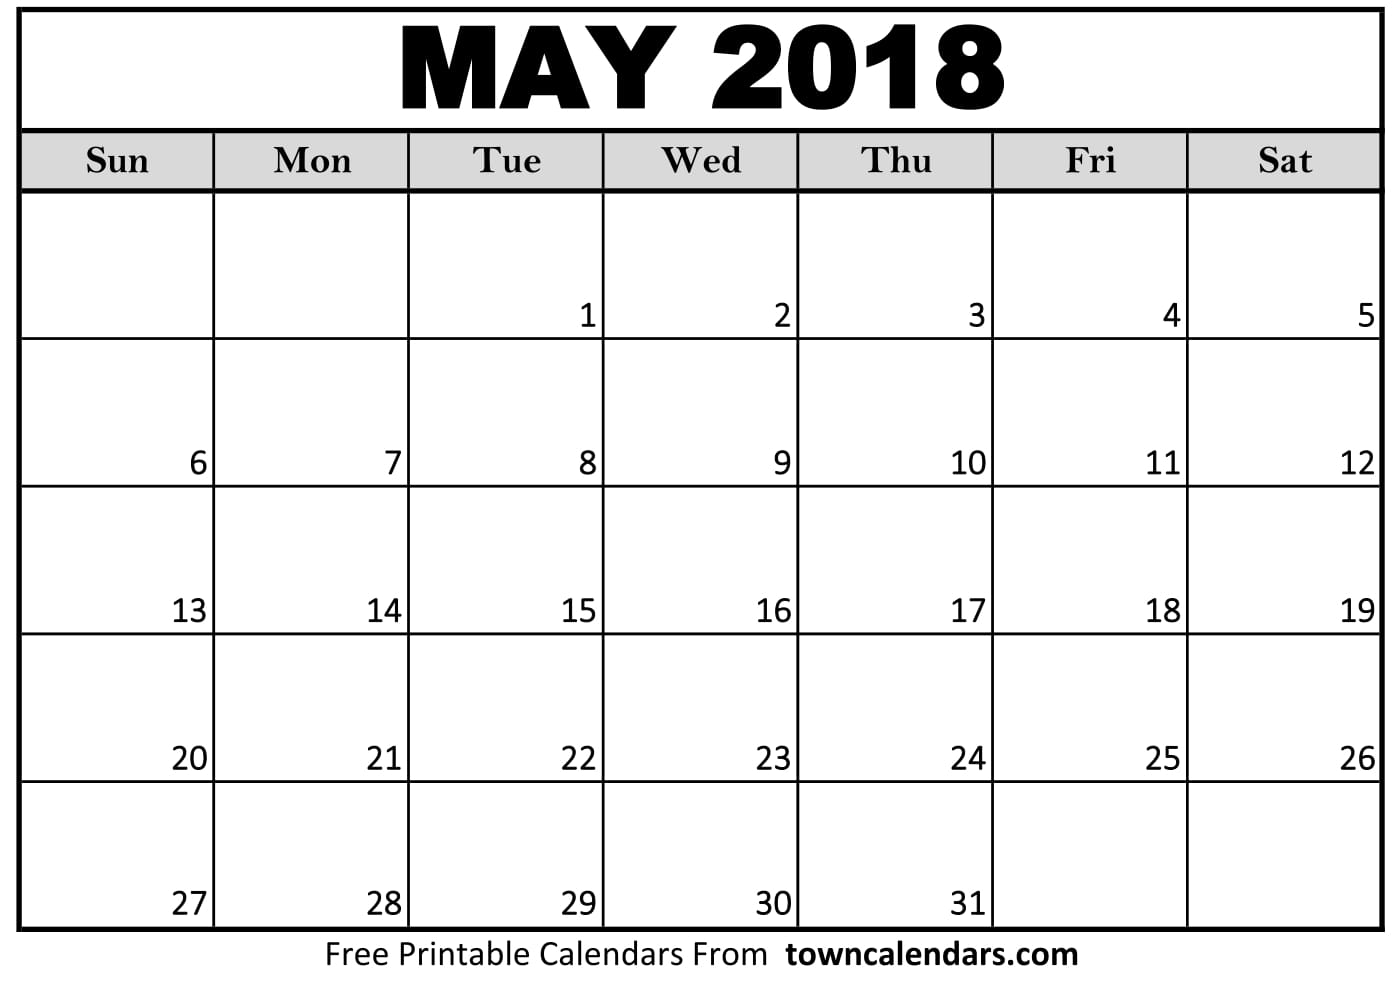 May 2018 Calendar